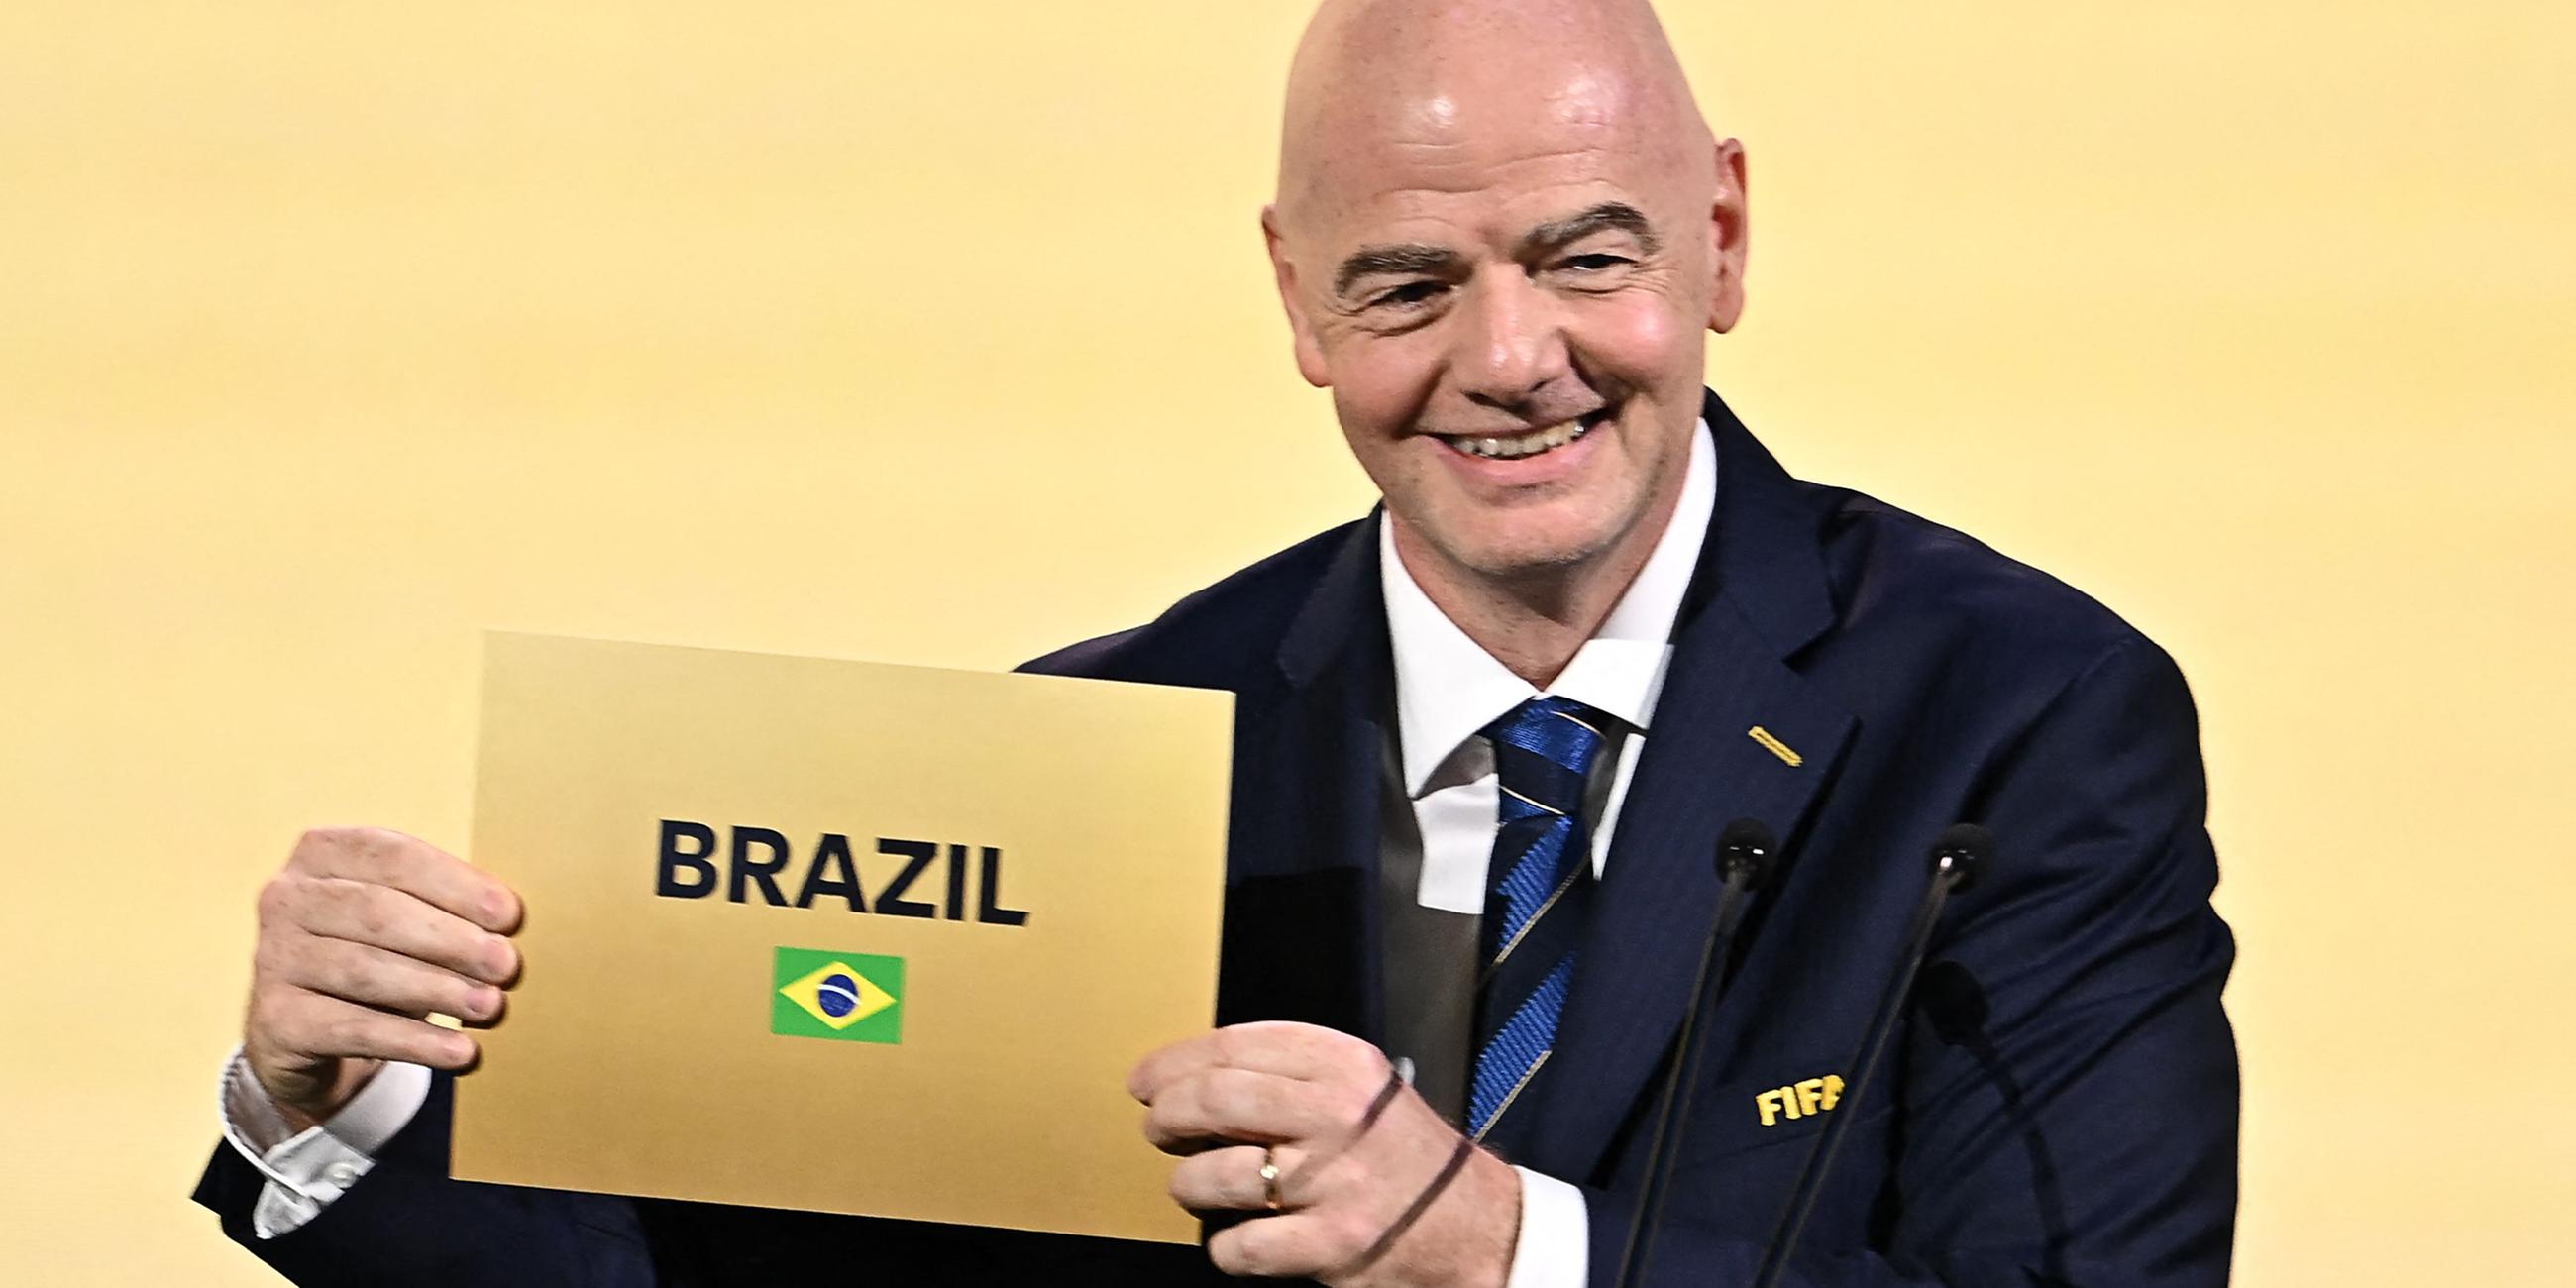 FIFA-Präsident Gianni Infantino zeigt ein Schild mit der Aufschrift "Brasilien"